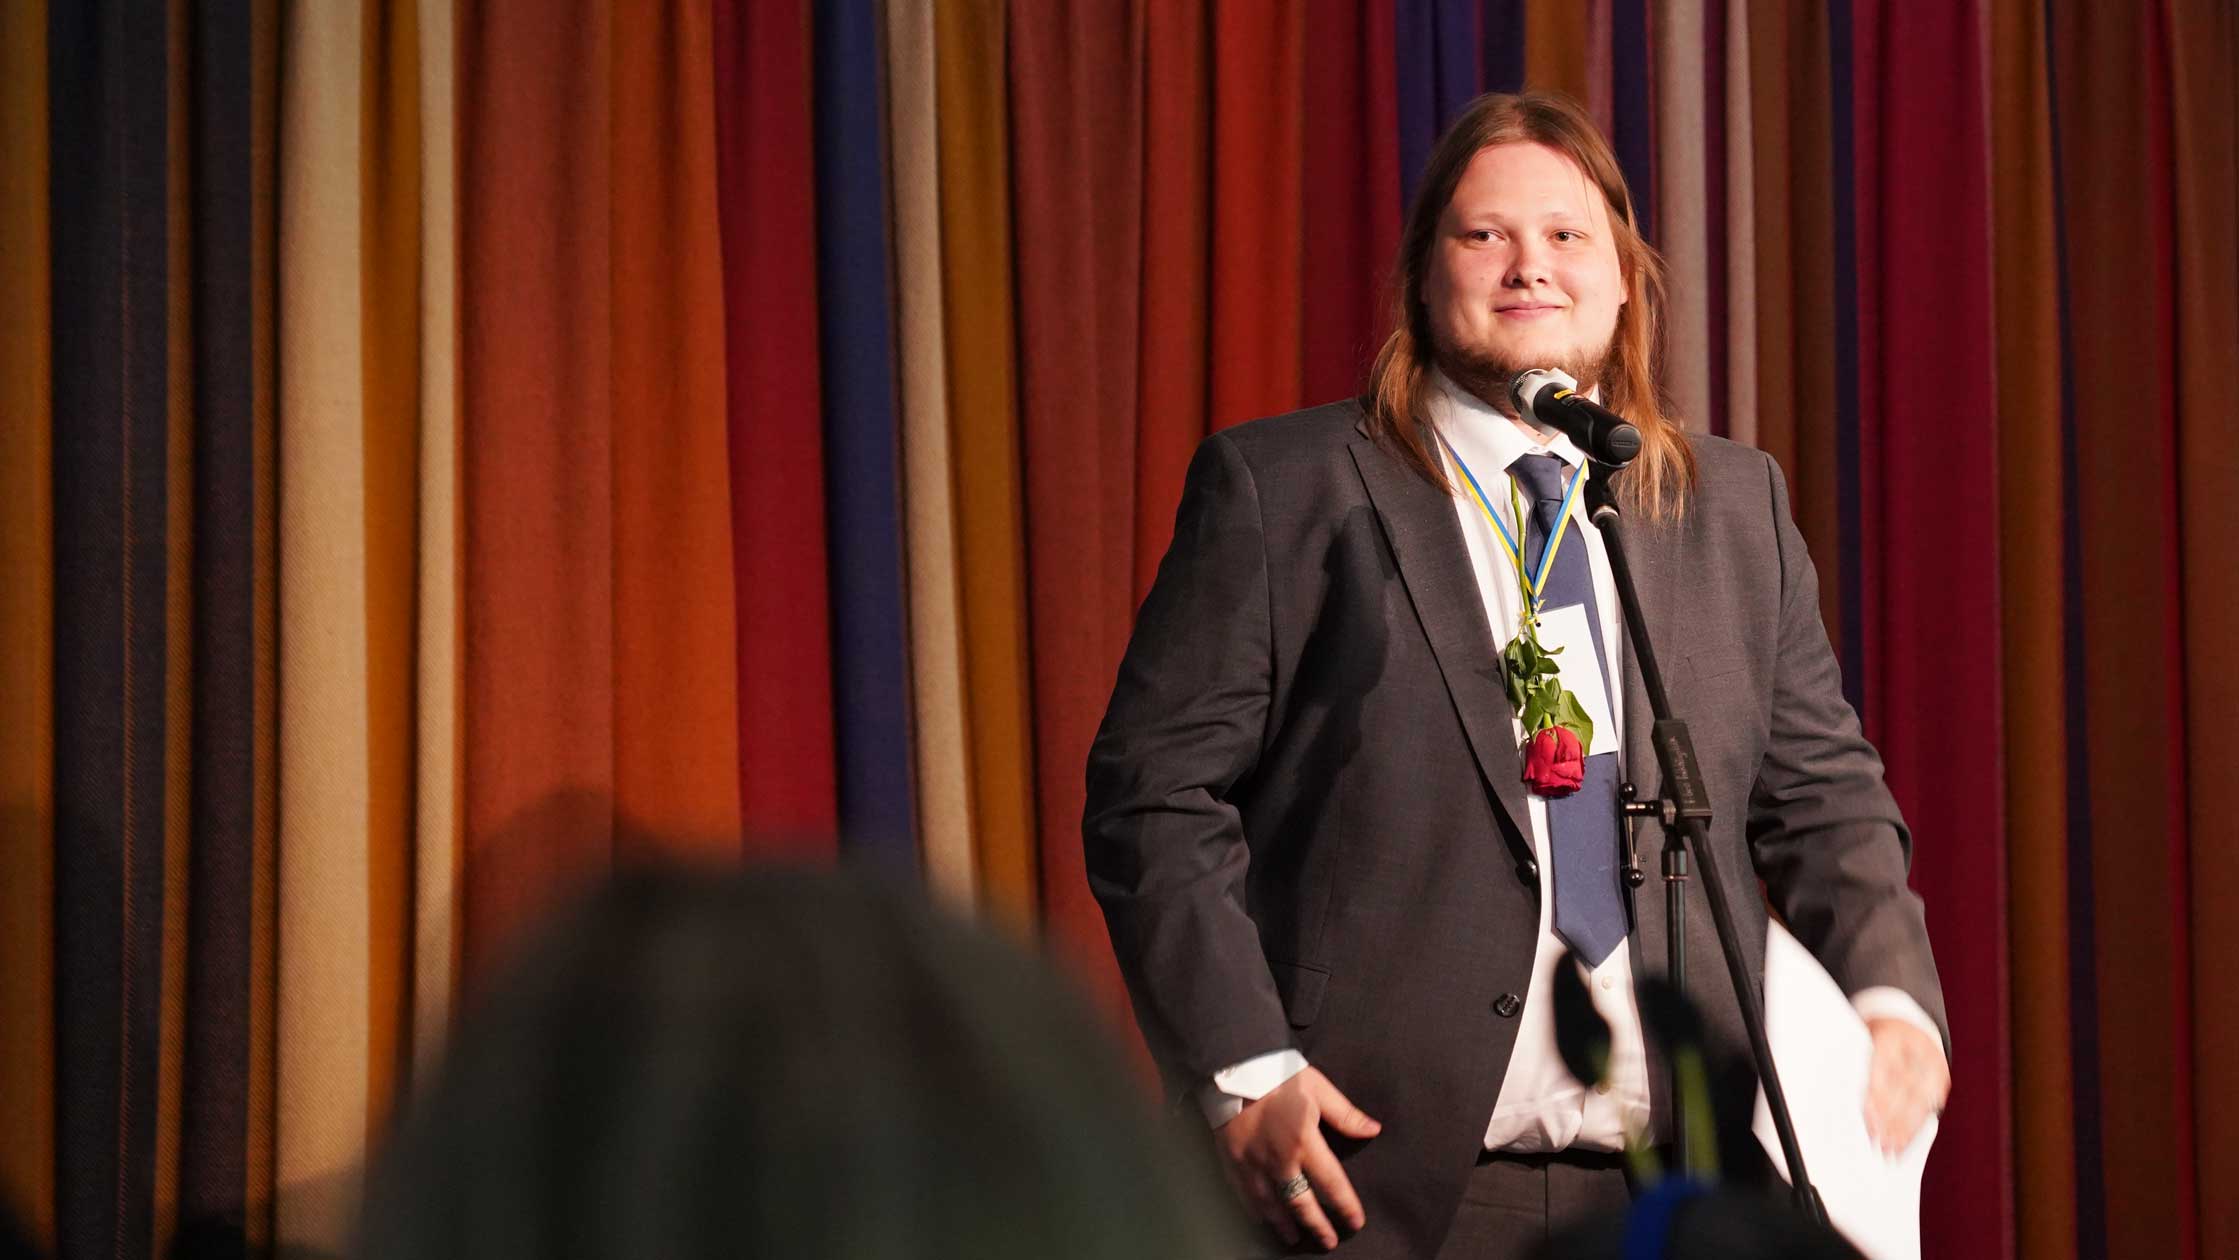 Ung man med långt rödlätt hår ler där han står på en scen framför ett draperi. Han har går kostym, vit skjorta, slips och en ros hängd runt halsen.